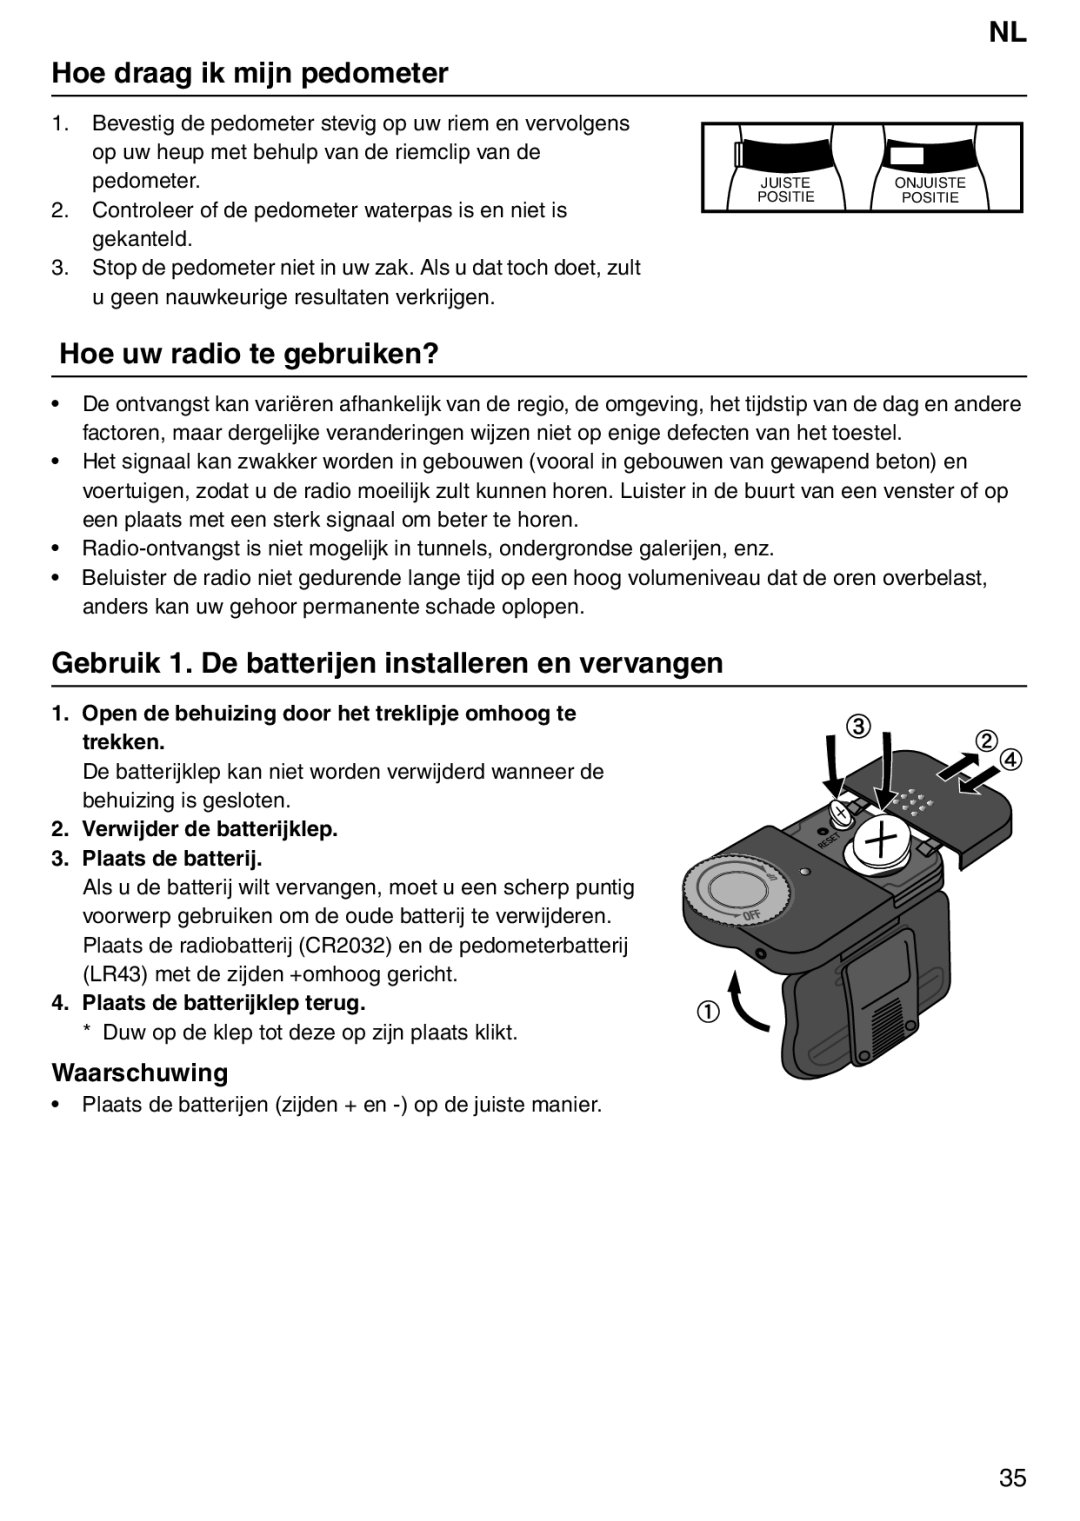 Tanita PD640 NL Hoe draag ik mijn pedometer, Hoe uw radio te gebruiken?, Gebruik 1. De batterijen installeren en vervangen 